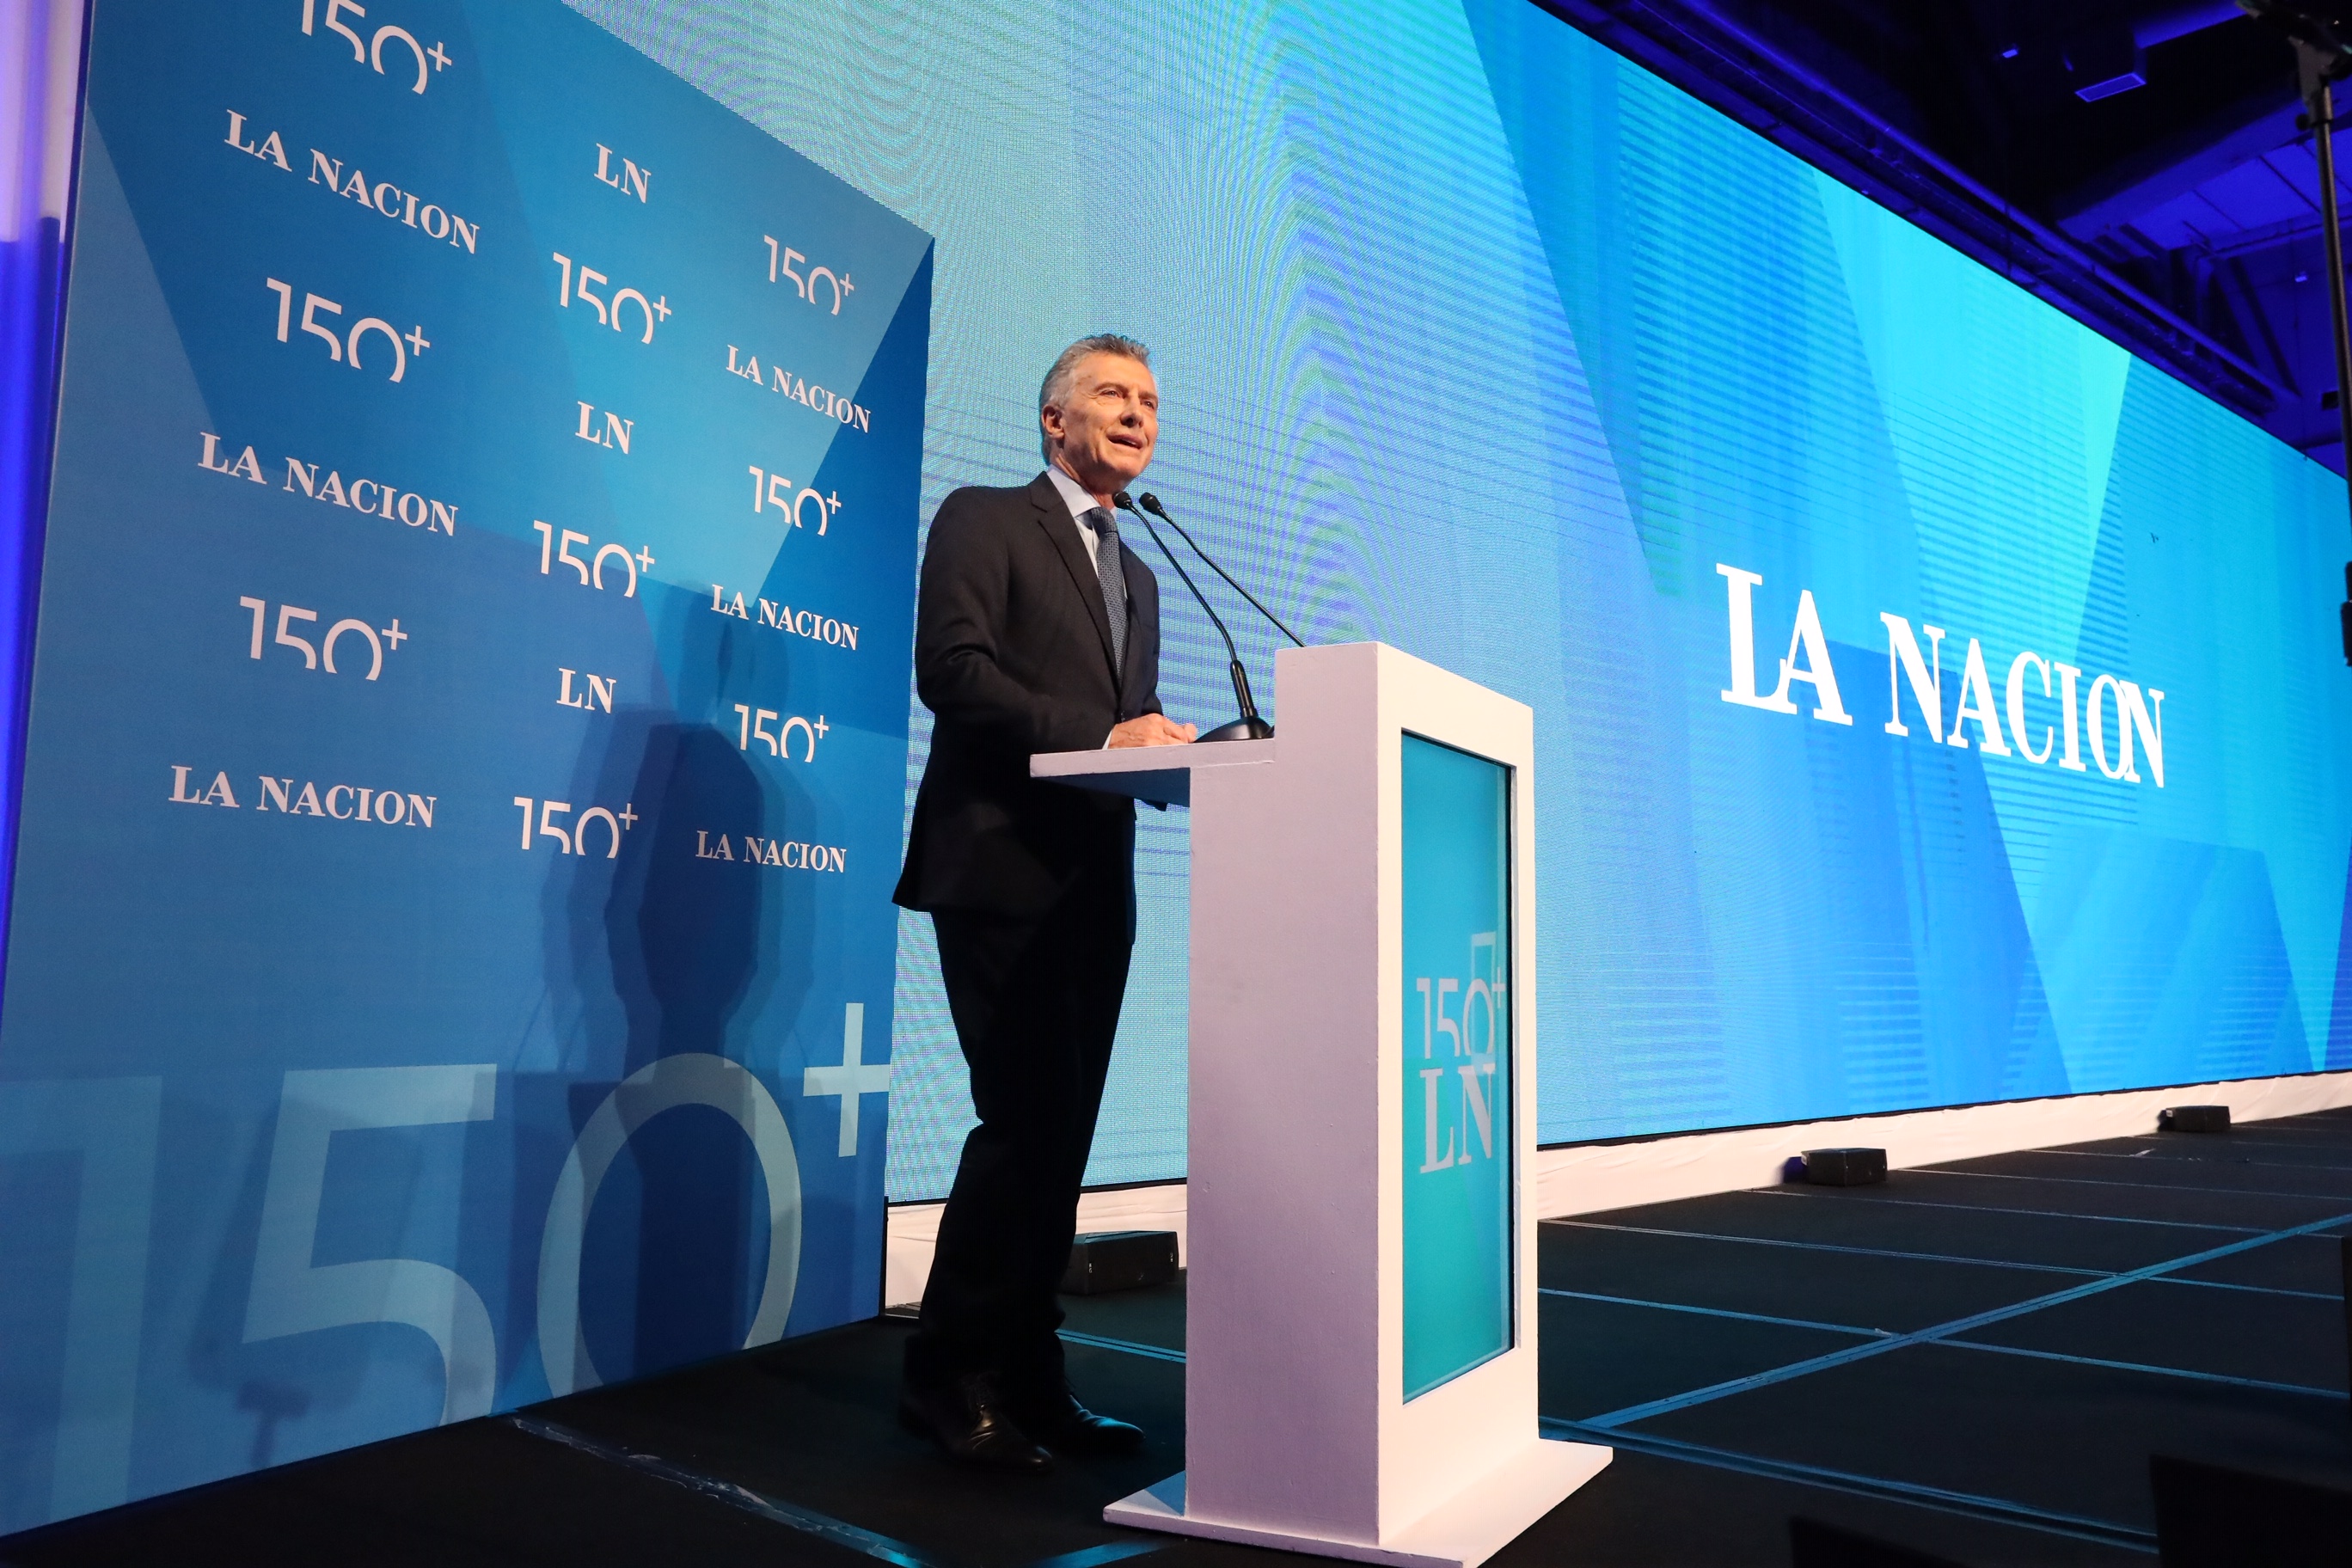 Macri: Confío en que vamos a seguir defendiendo las transformaciones que logramos juntos